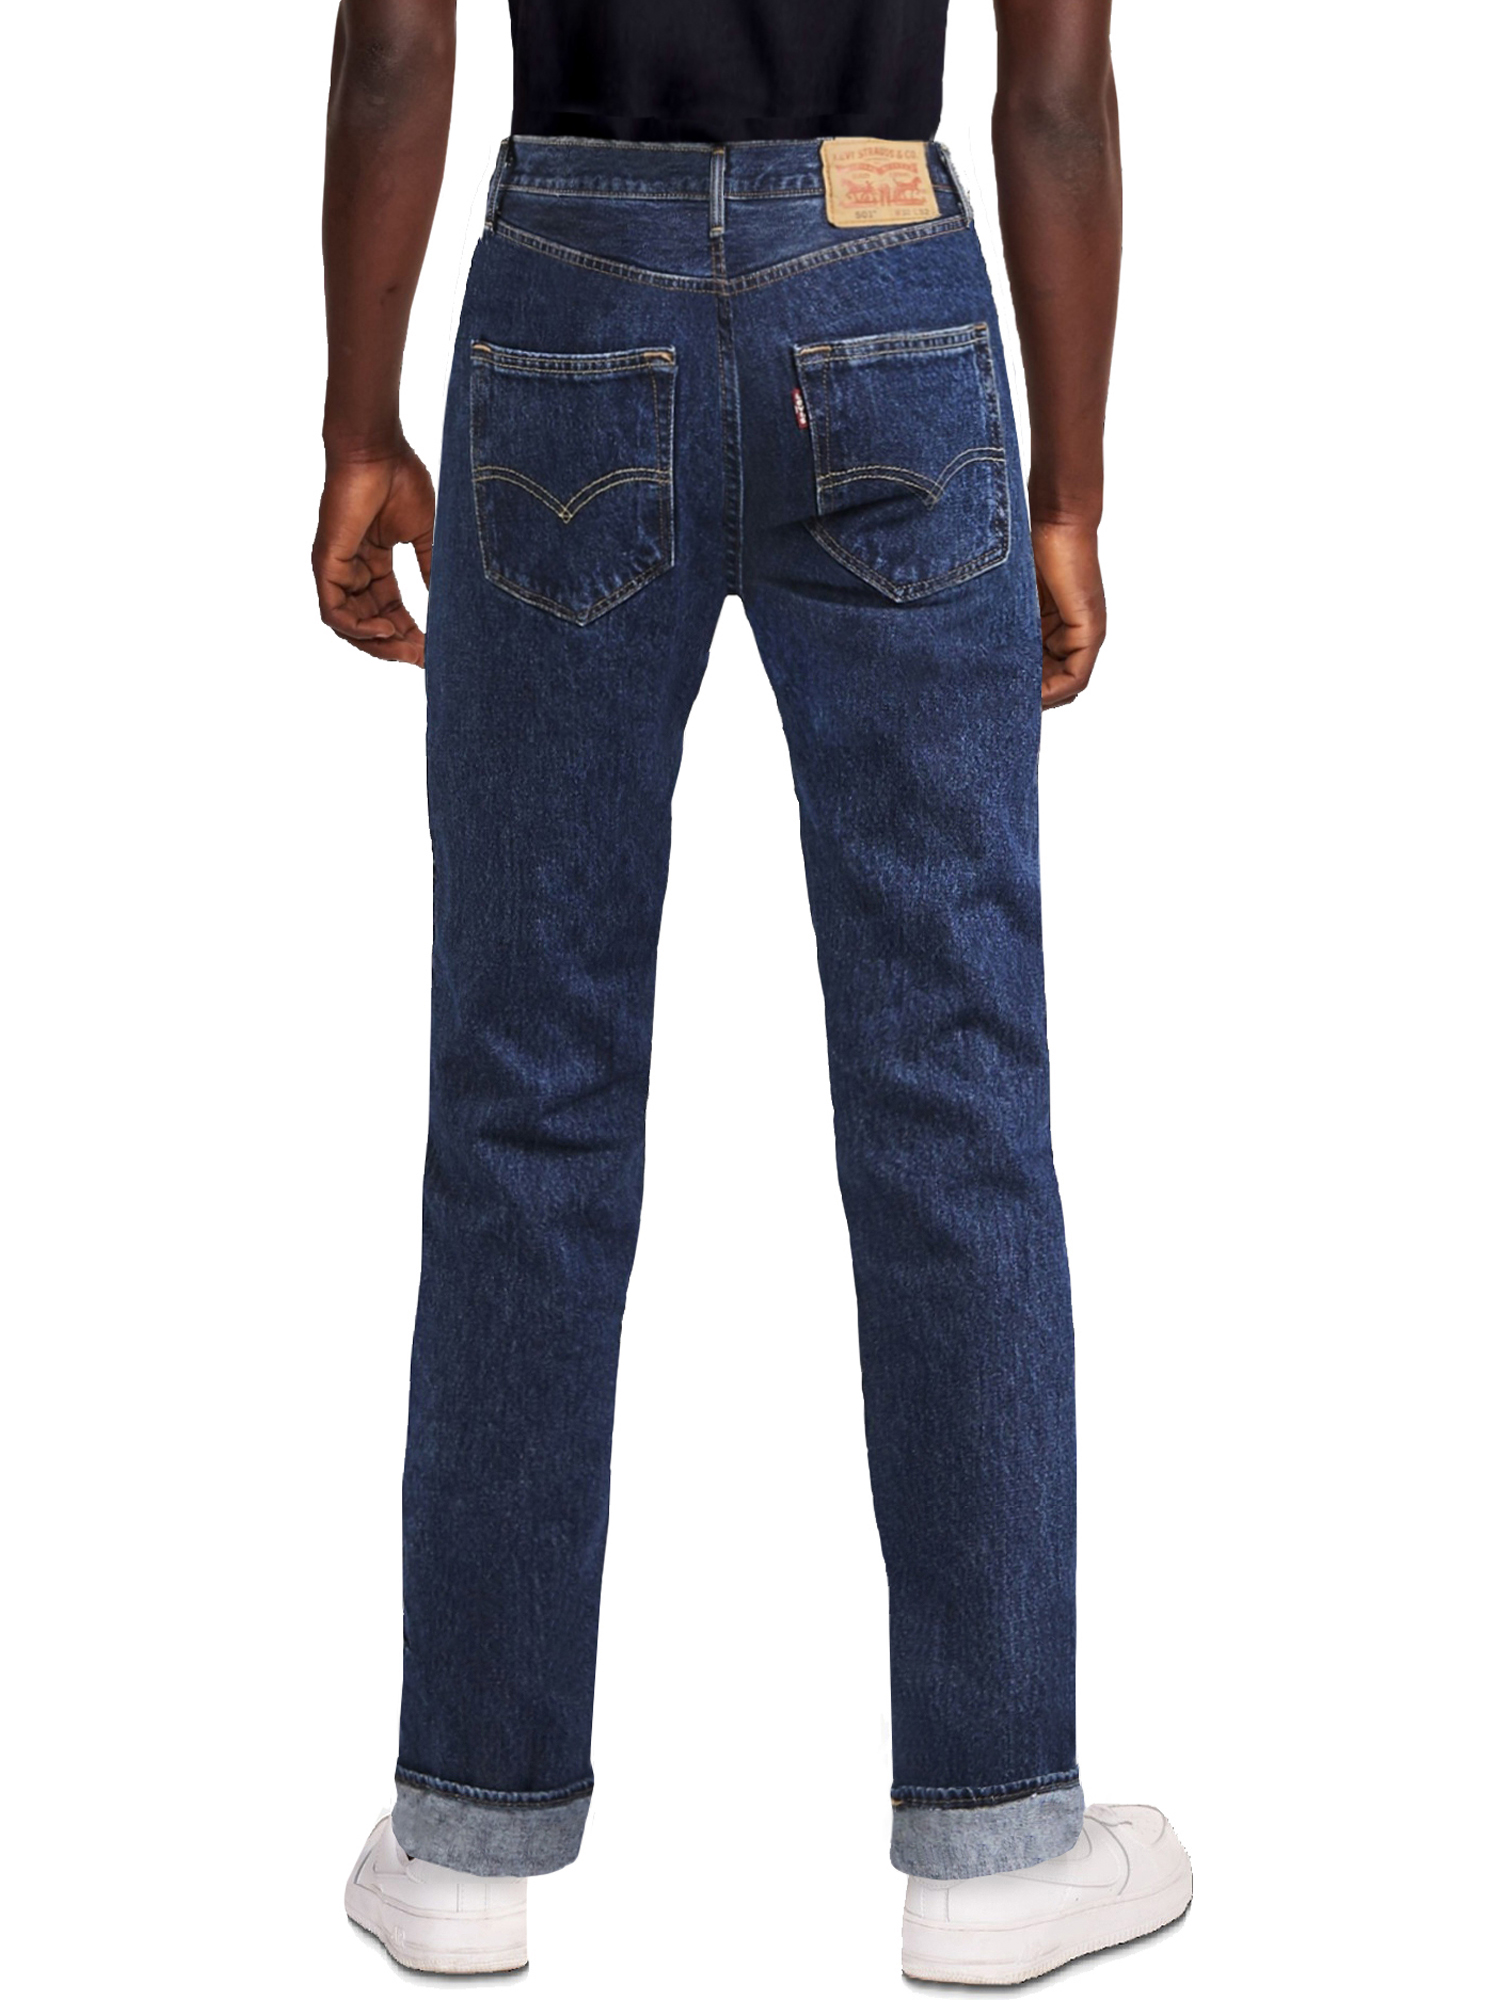 Levi's Men's 501 Original Fit Jeans - image 9 of 9